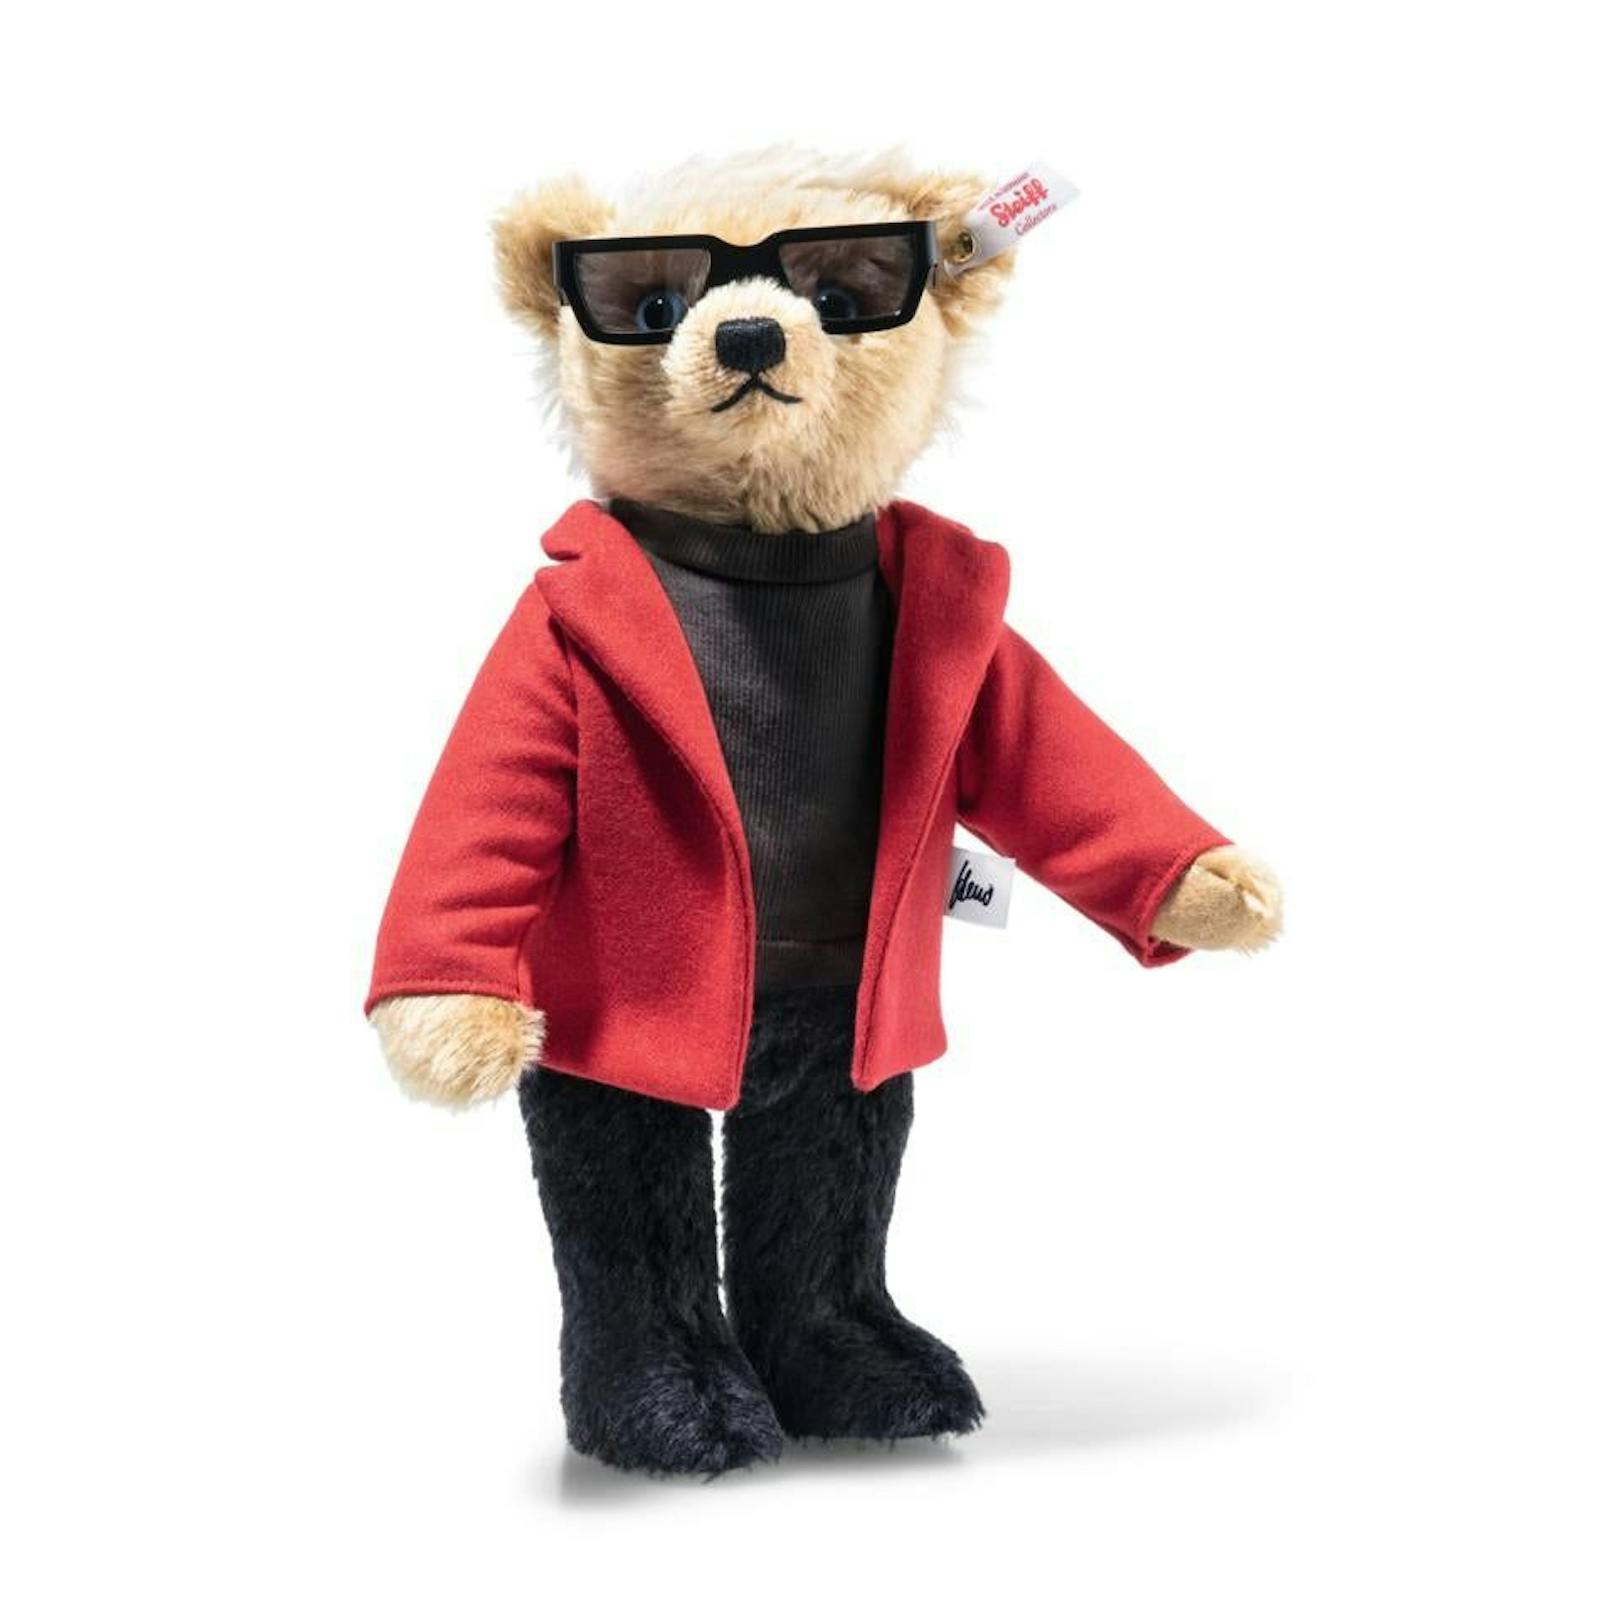 "Darüber trägt der Heino Teddybär ein rotes Sakko aus feinem Wollstoff, unter dem der schwarze Rolli hervorblitzt", heißt es auf seiner Homepage.